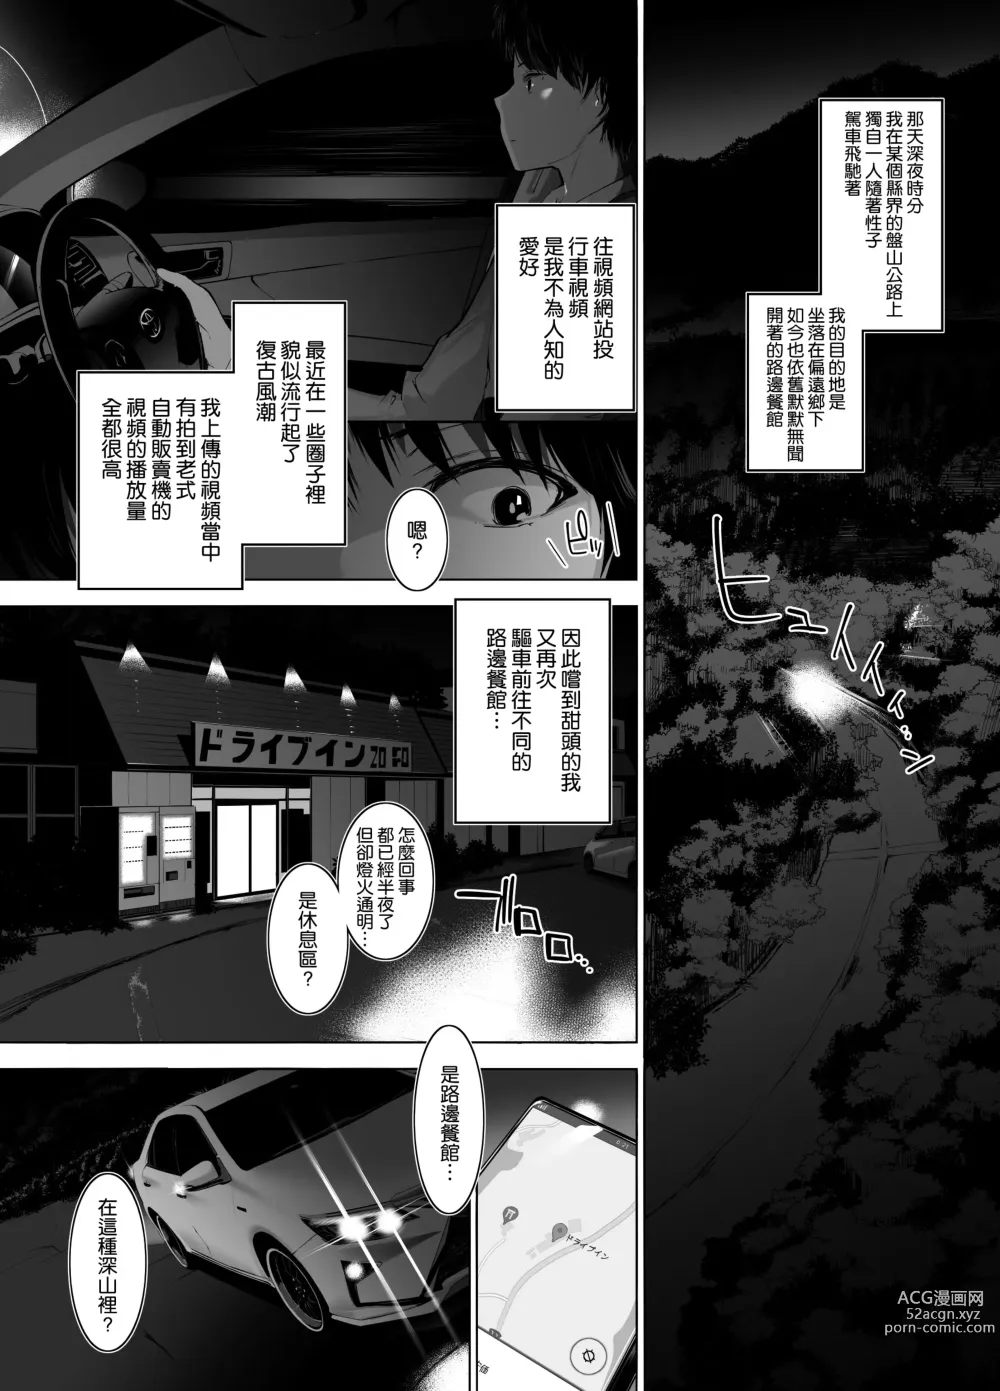 Page 3 of doujinshi 美人母娘が経営するドライブインの秘密のおもてなしが過激すぎる